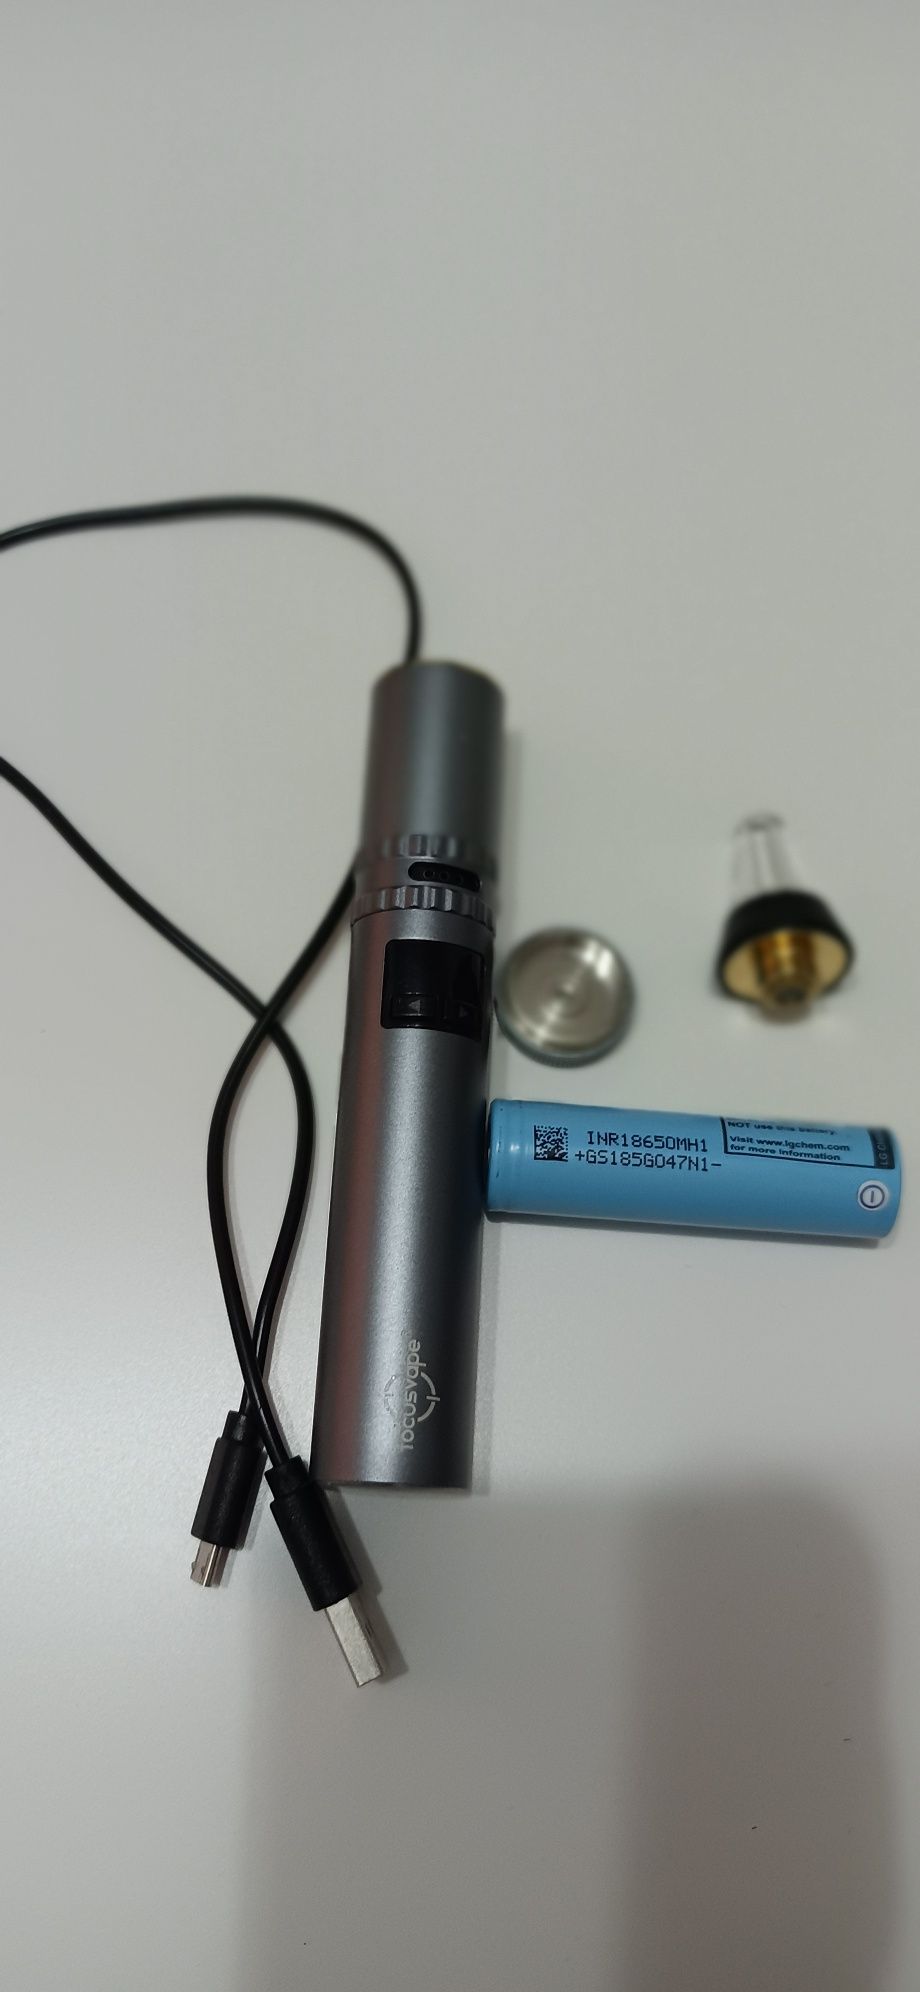 Țigară electronică (vaporizator focusvape)